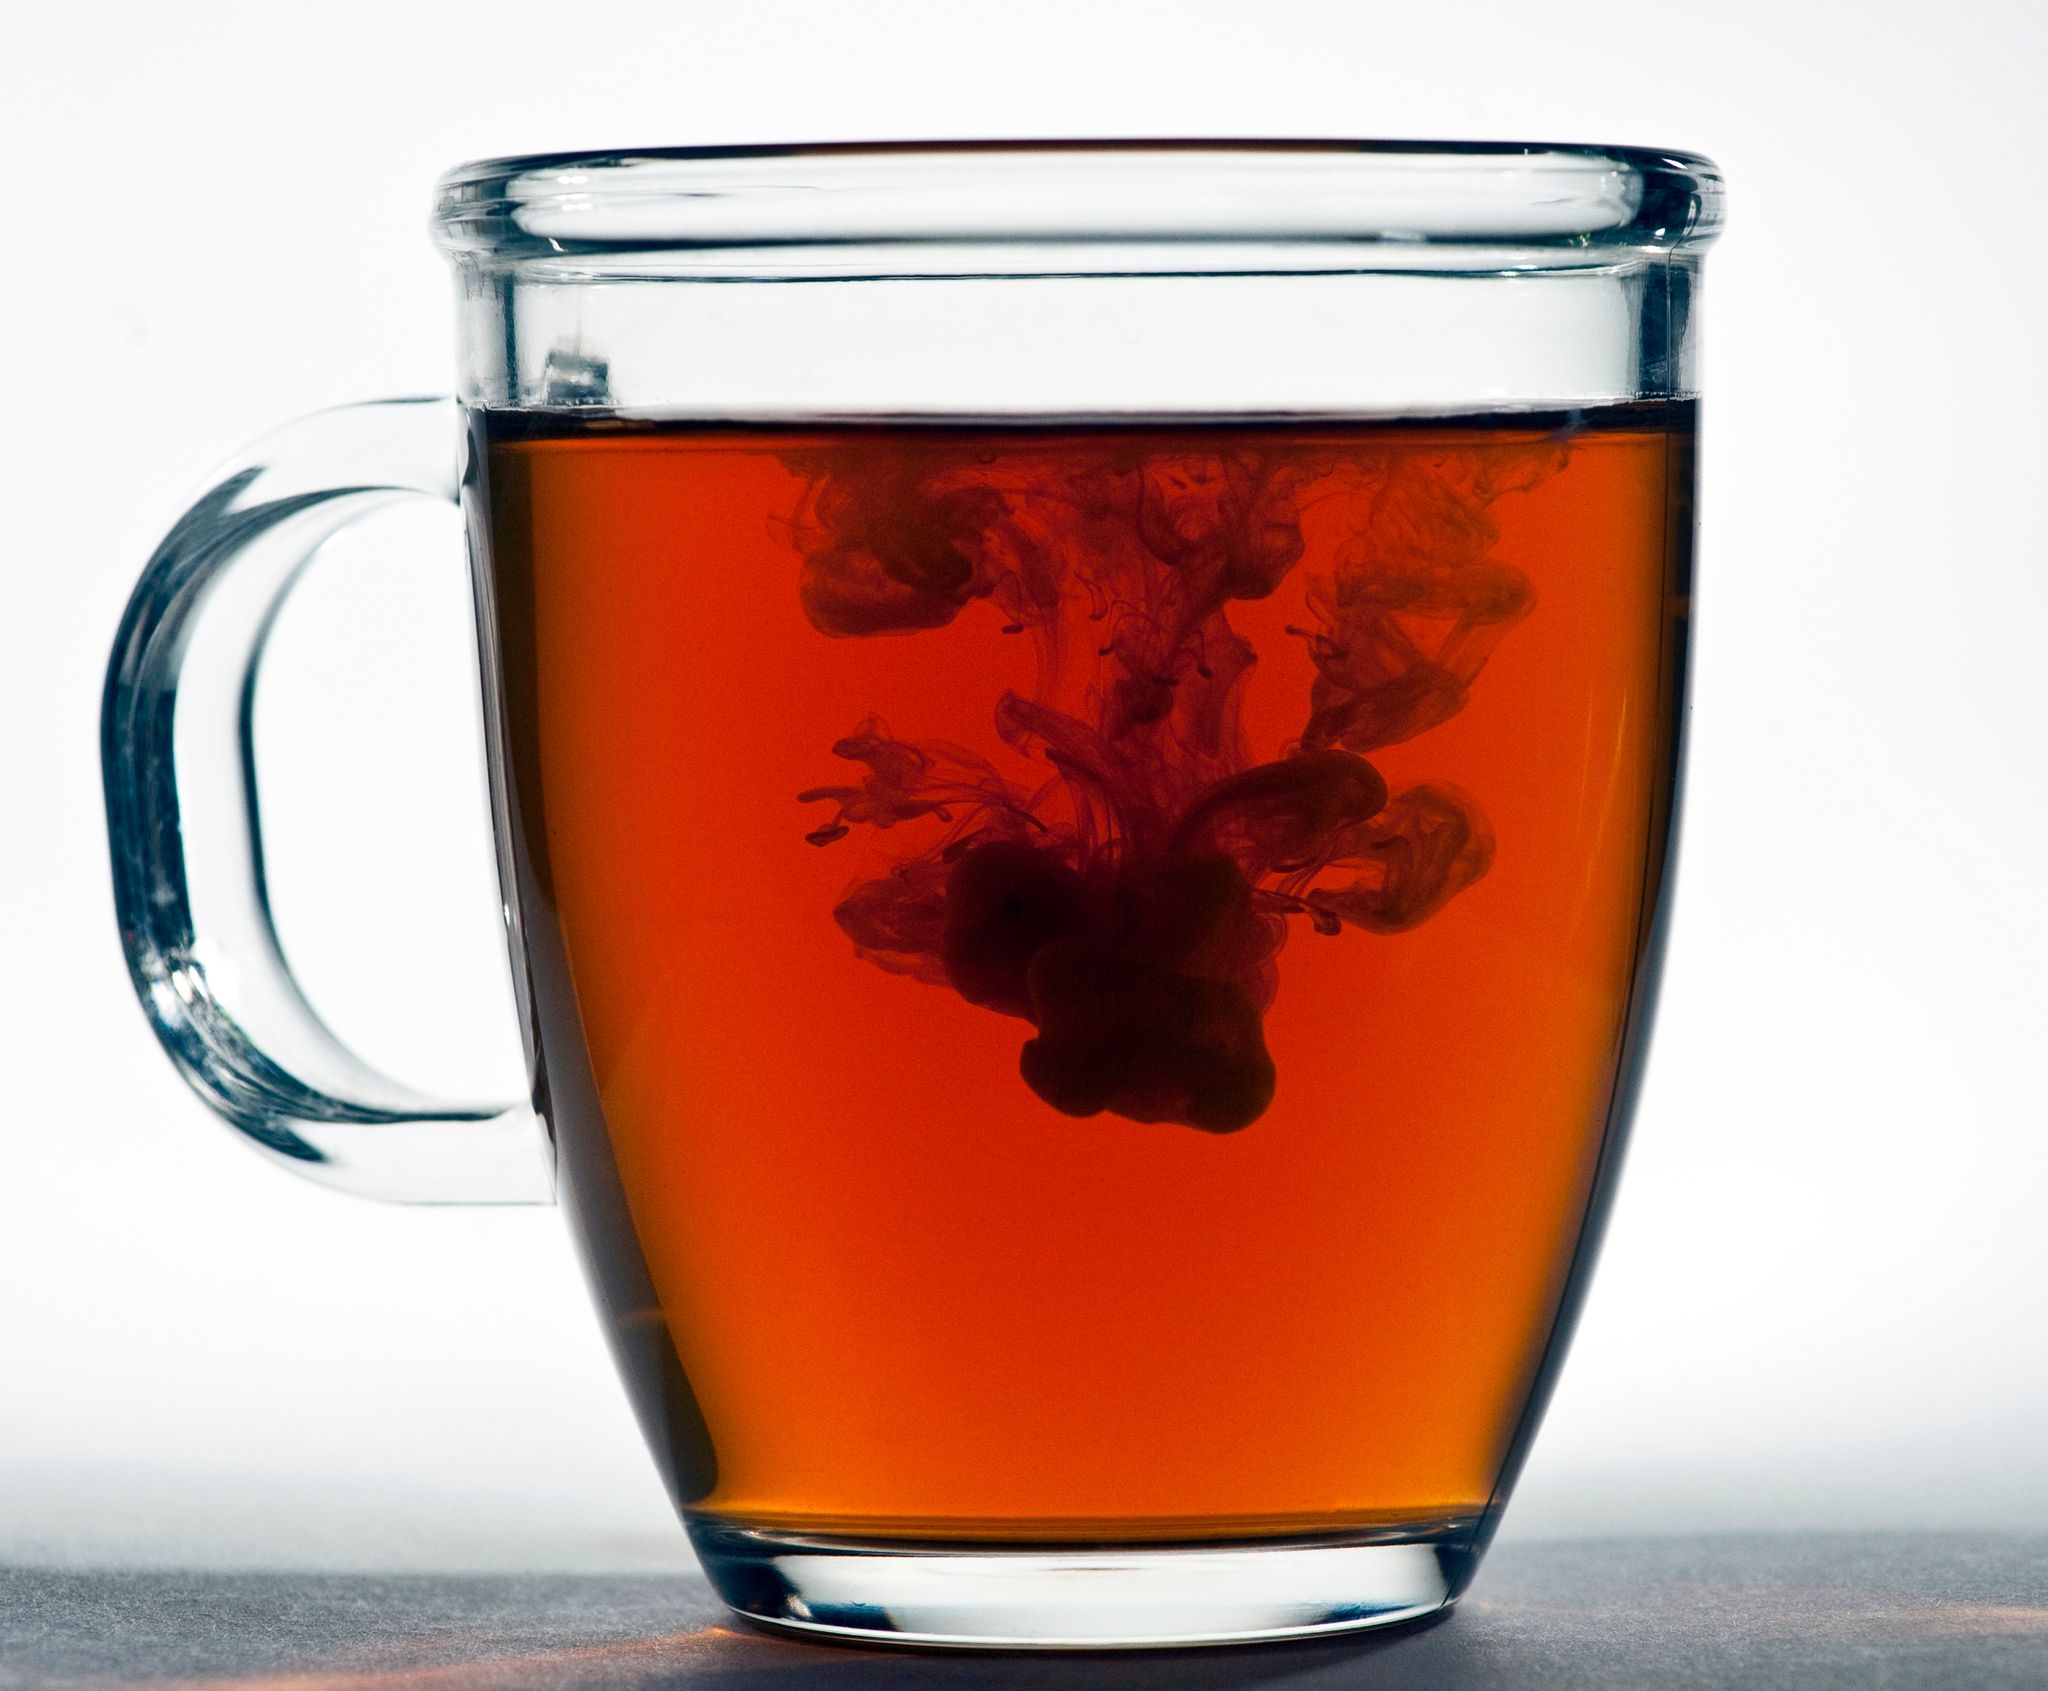 In schwarzem Tee stecken Gerbstoffe, die die Haut beruhigen - was gerade bei Neurodermitis ein willkommener Effekt ist.